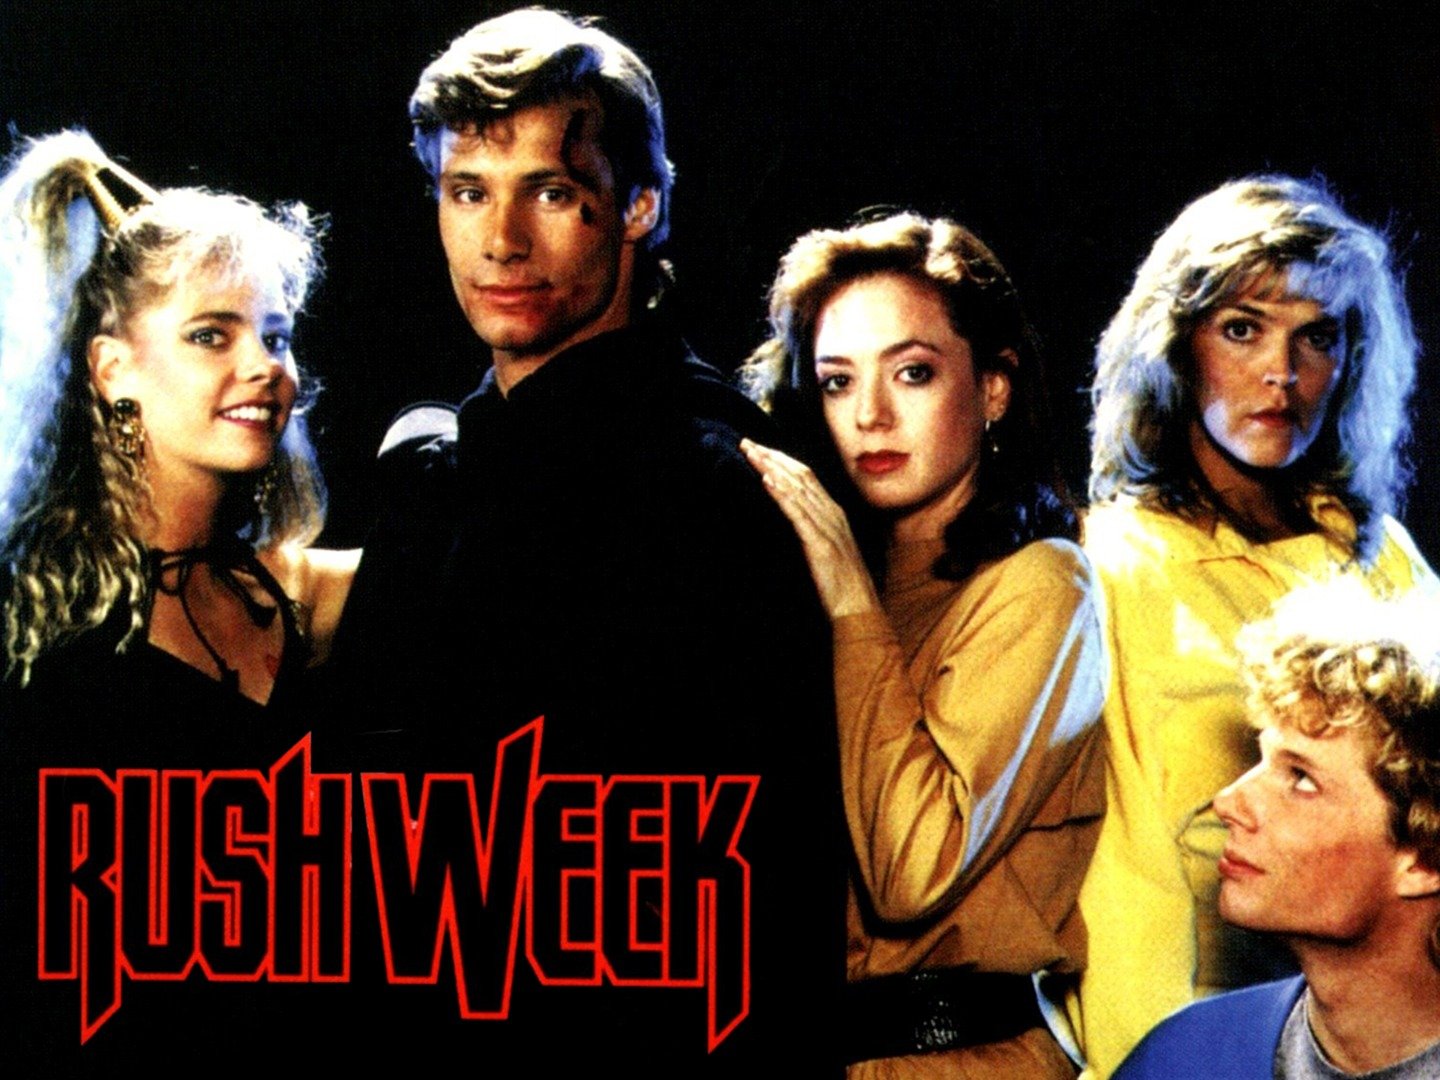 Rush Week (1989) Rotten Tomatoes